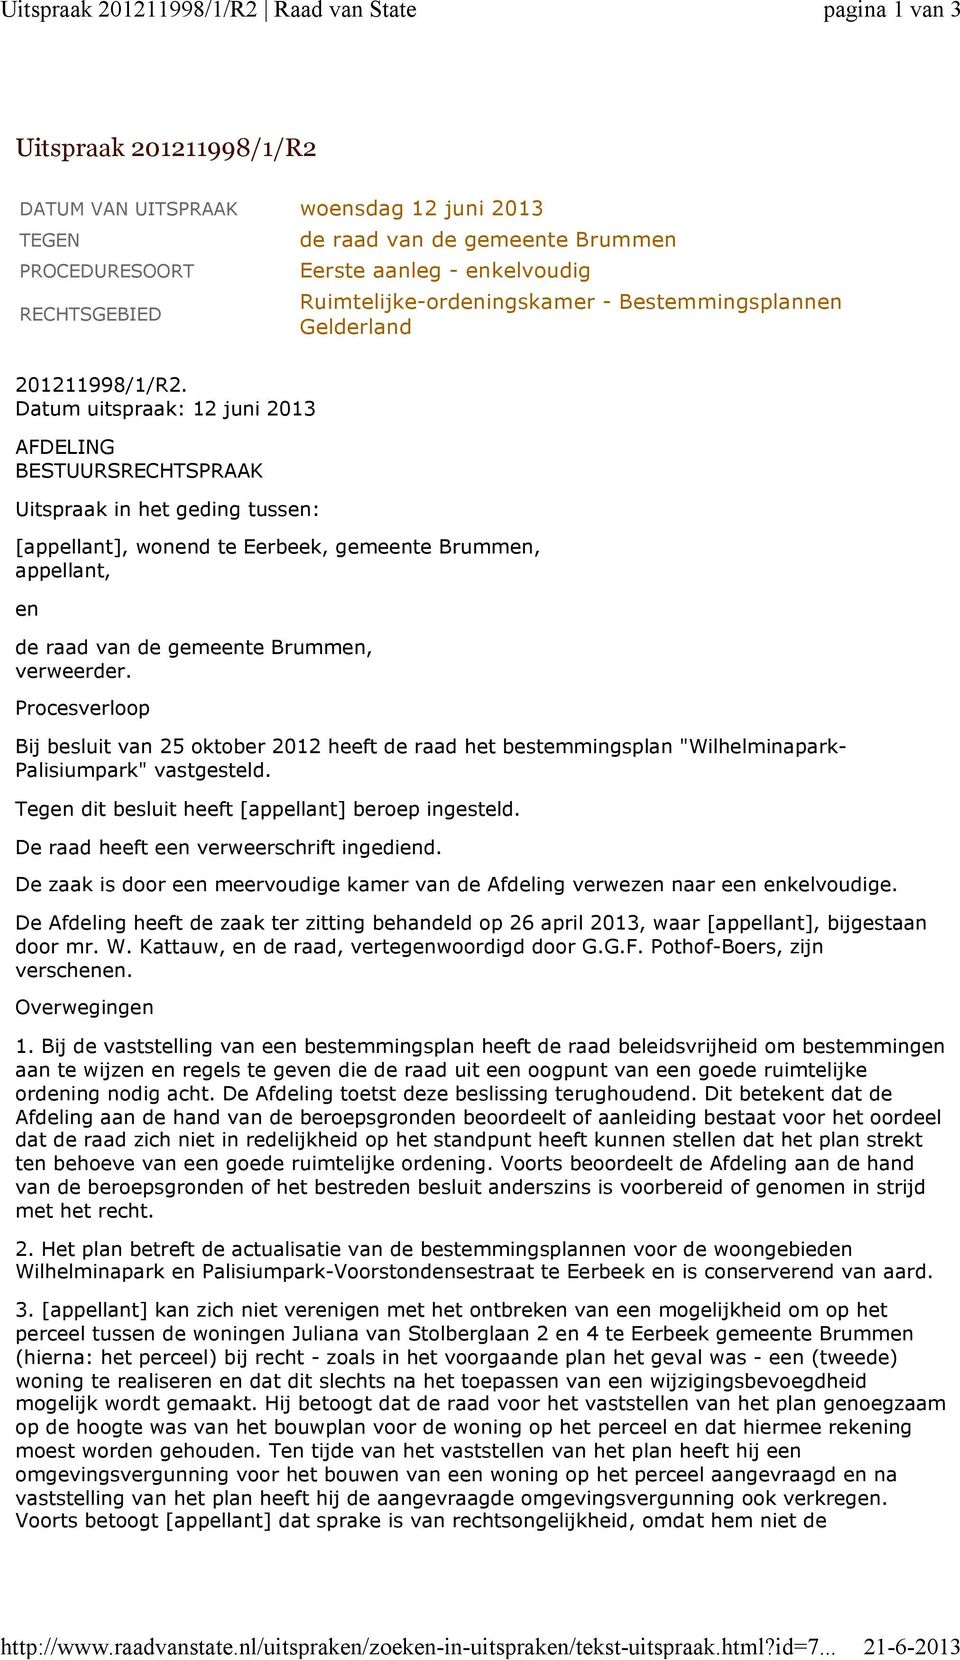 Ruimtelijke-ordeningskamer - Bestemmingsplannen Gelderland 201211998/1/R2.